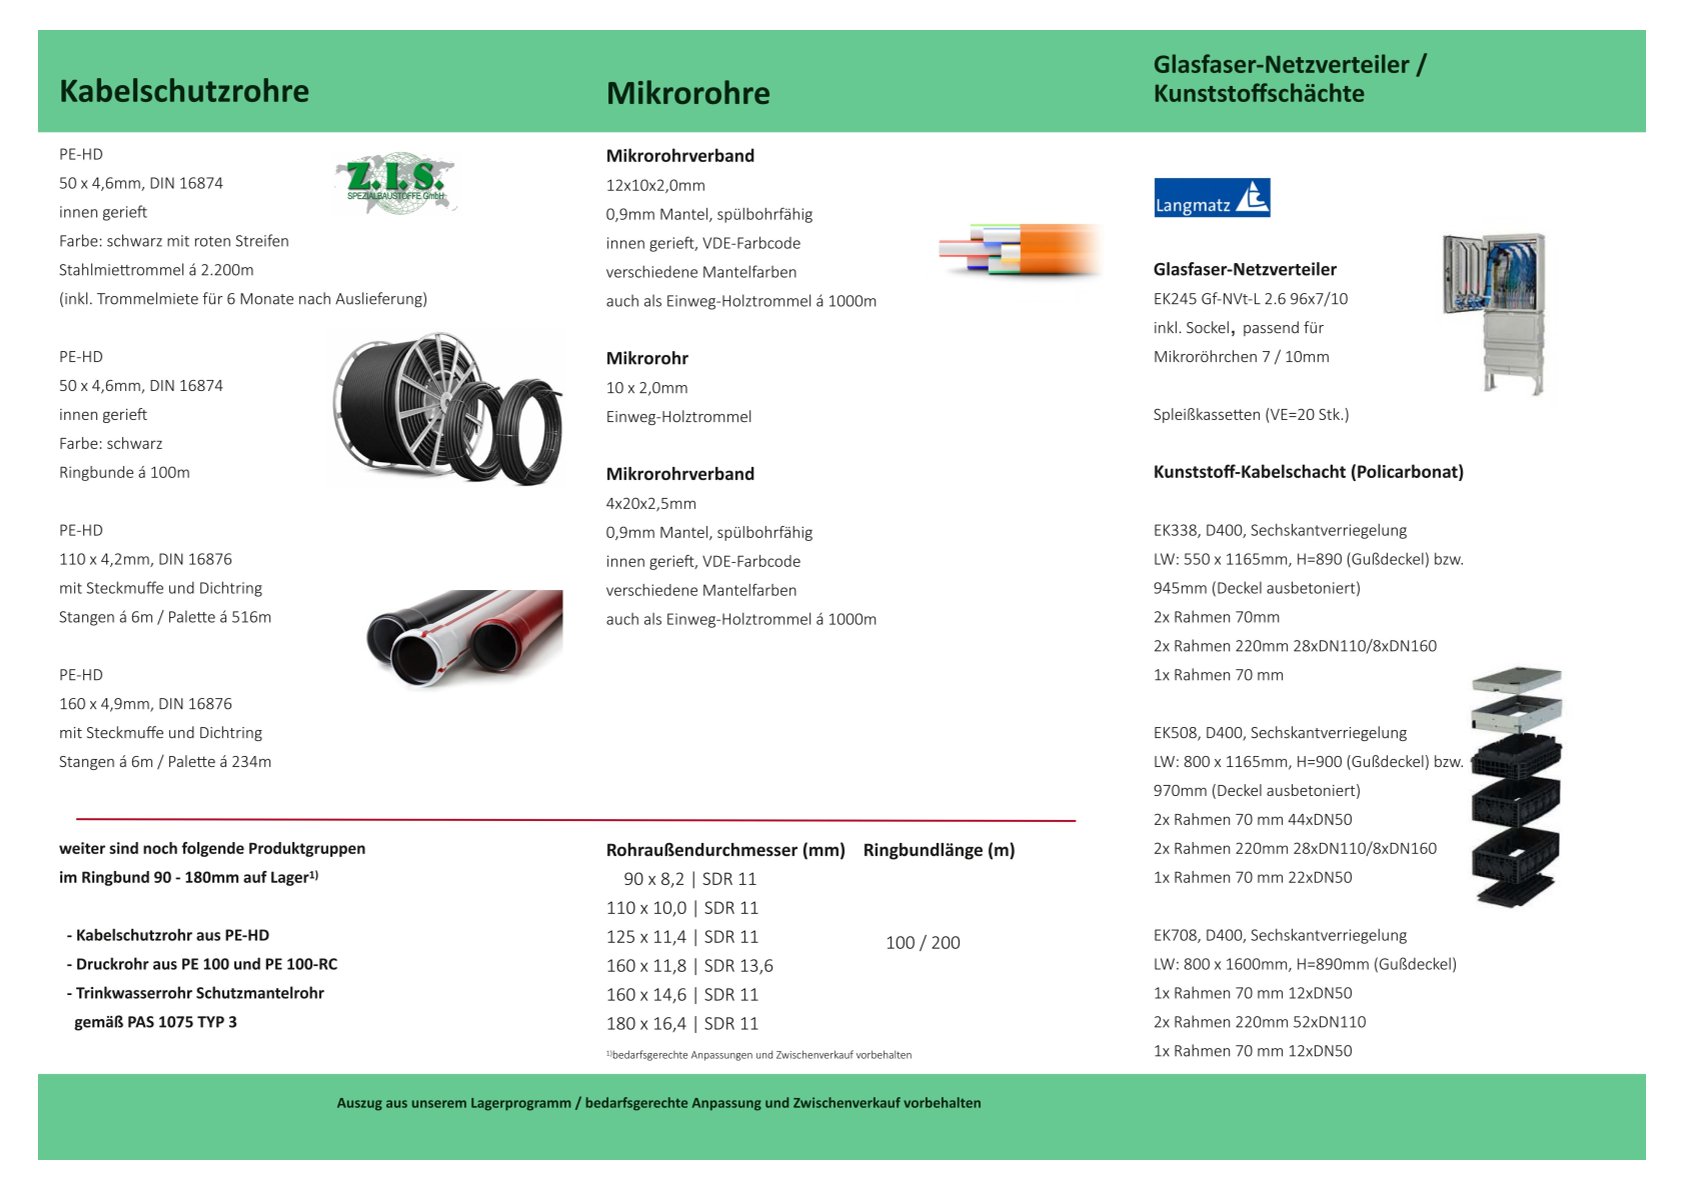 Übersicht Kabelschutzrohre, Mikrorohre, Glasfaser-Netzverteiler, Kabelschächte